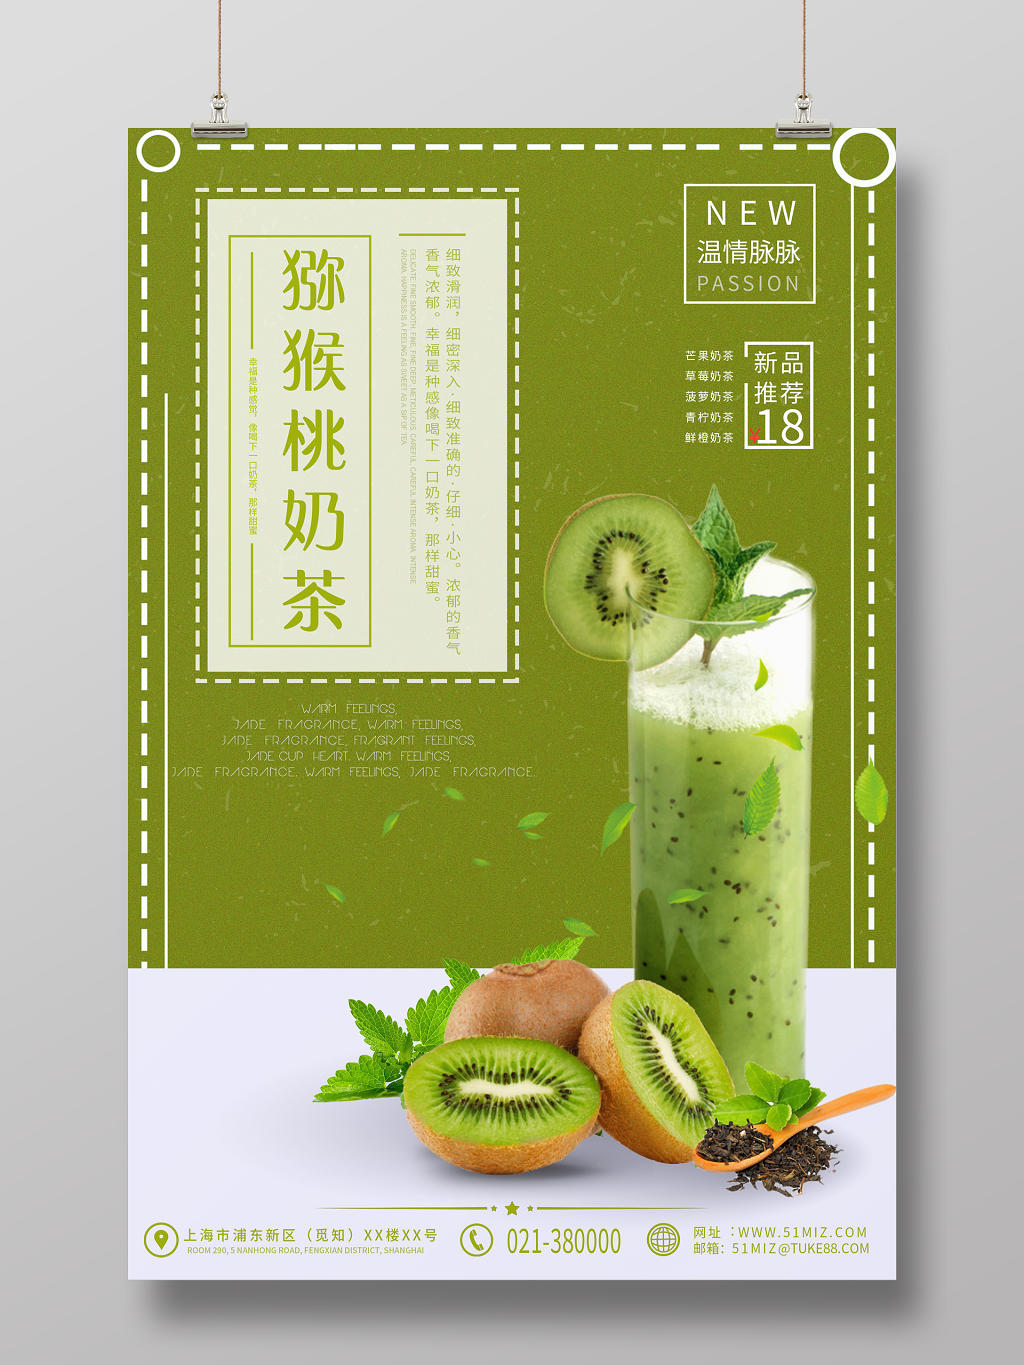 水果猕猴桃奶茶温情脉脉新品推荐宣传海报设计